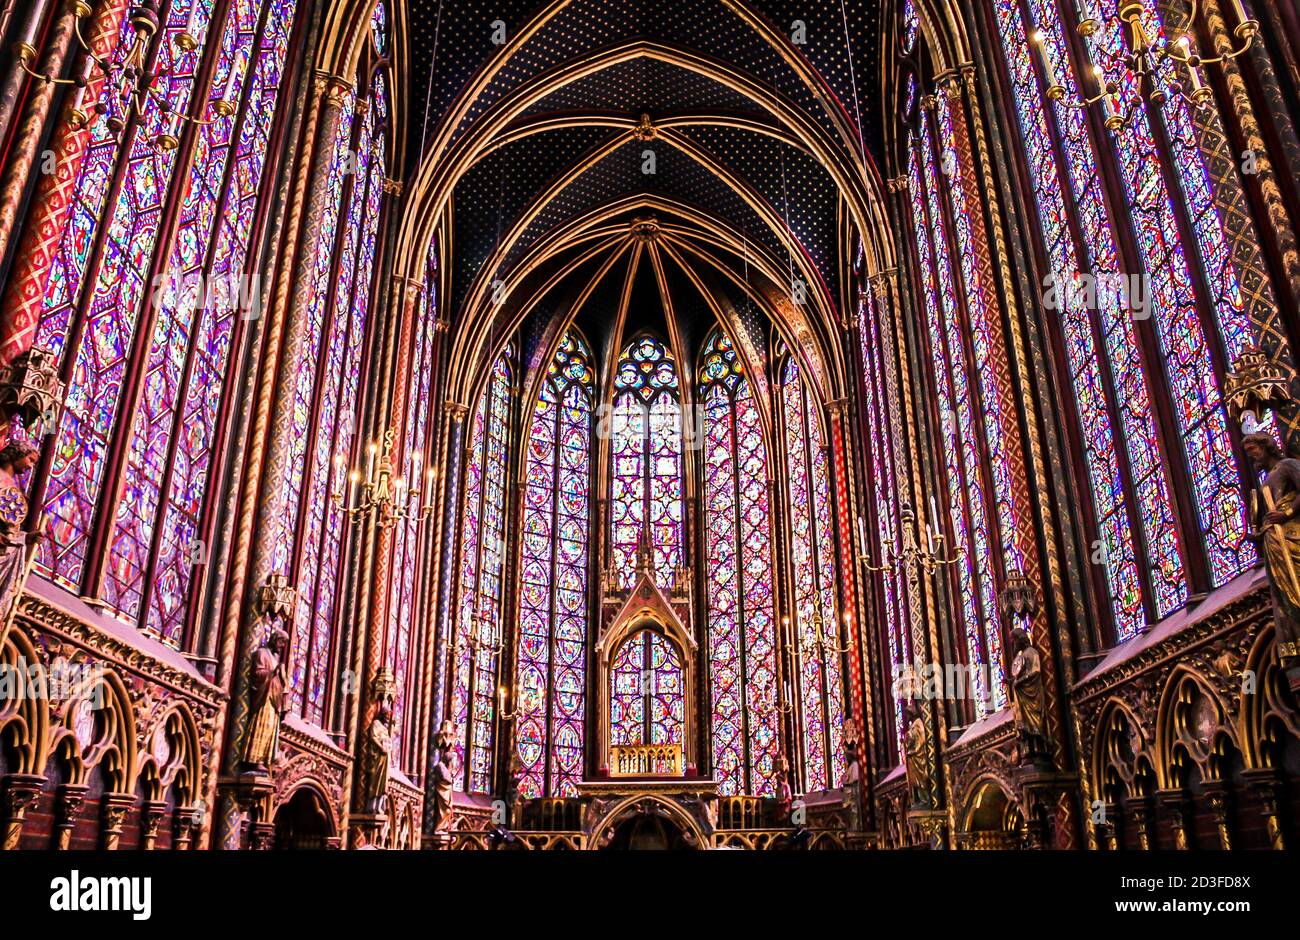 Die Sainte Chapelle (Heilige Kapelle) in Paris, Frankreich. Die Sainte Chapelle ist eine königliche mittelalterliche gotische Kapelle. Stockfoto